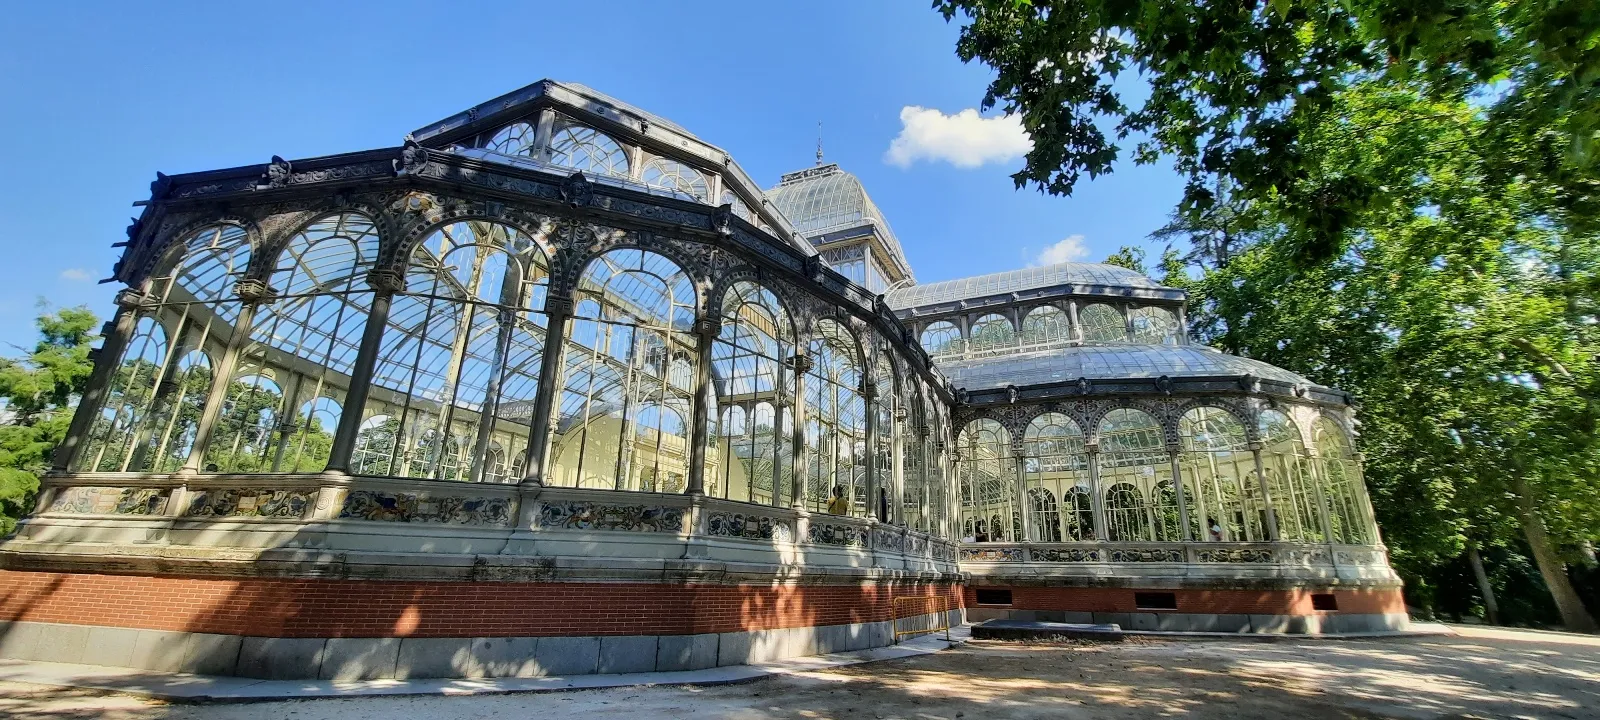  Le Palacio de Cristal, dans le parc Casa de Campo, Madrid. © Daniel Desjardins